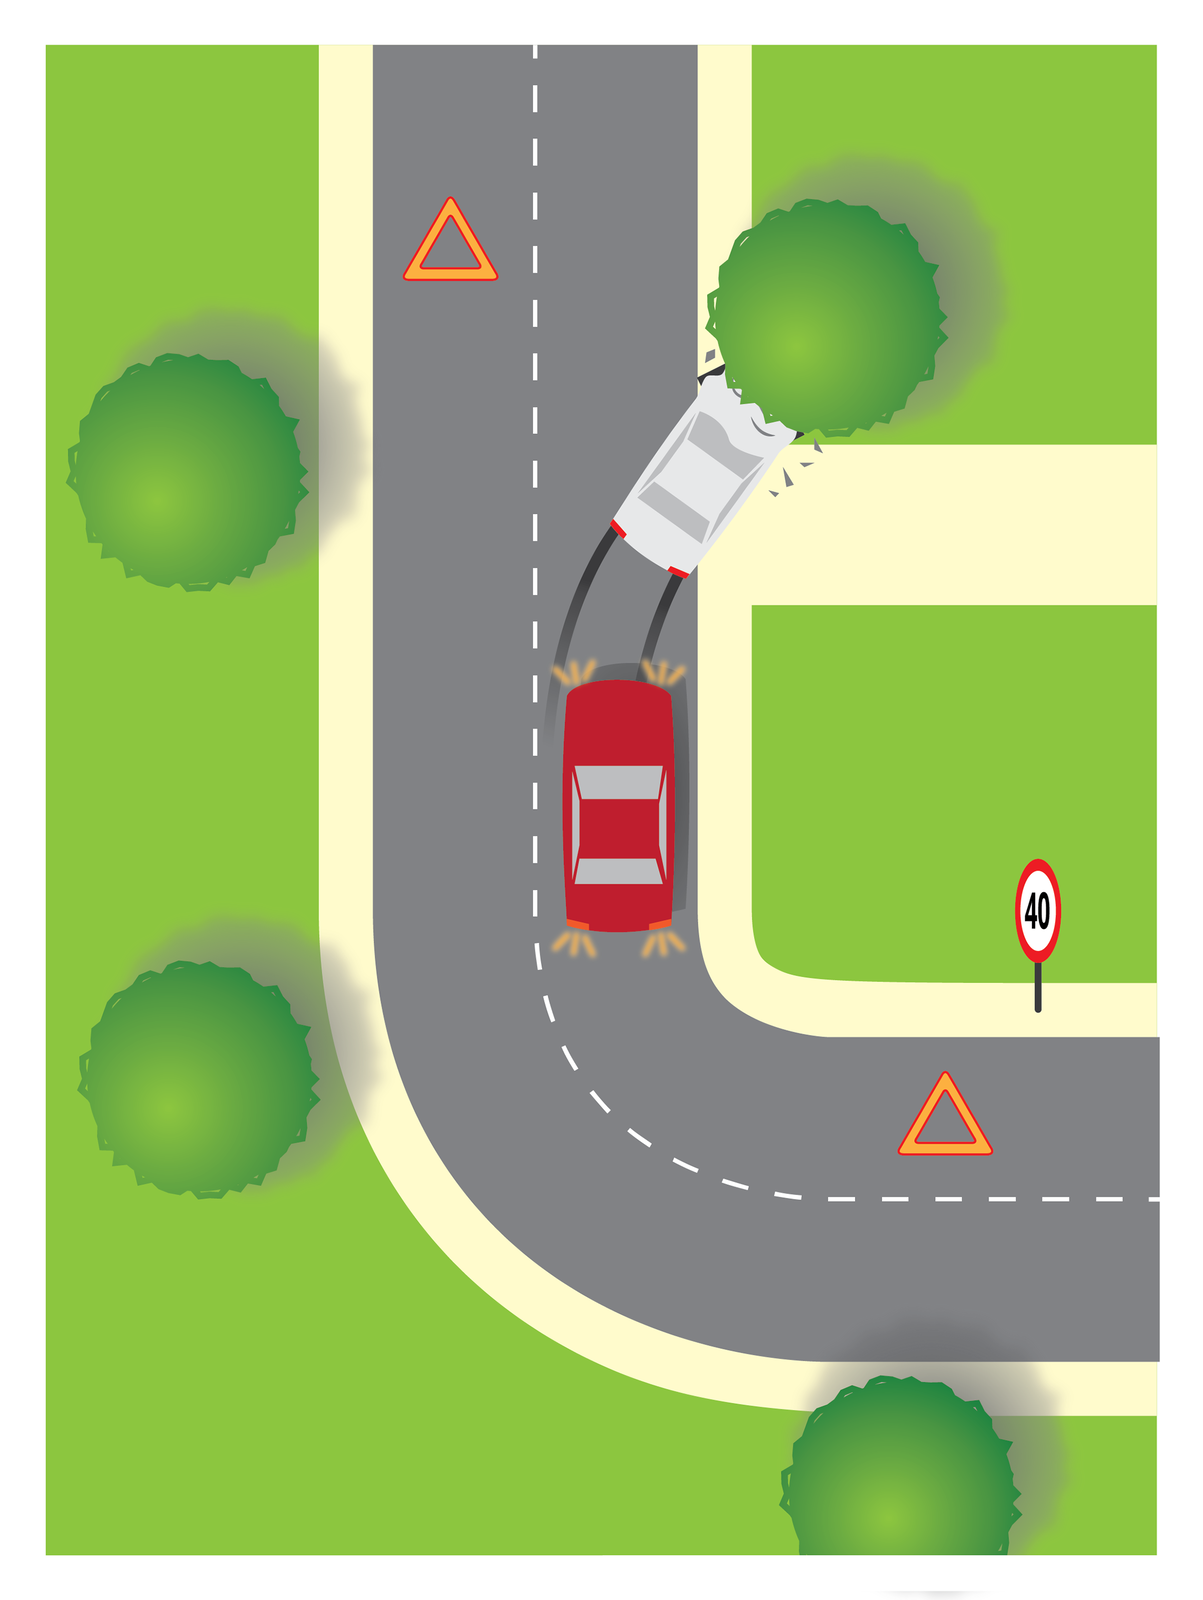 Galeria składa się z czterech rysunków ilustrujących sposób oznaczania miejsca wypadku. Rysunek numer trzy przedstawia oznakowanie miejsca wypadku na odcinku drogi z zakrętem. . Droga rozpoczyna się w pobliżu prawego dolnego narożnika rysunku, przebiega poziomo i po drugiej stronie kadru przechodzi zakrętem o kącie 90 stopni w drogę o przebiegu pionowym. Pobocza drogi zaznaczone kolorem jasnożółtym, pozostałe obszary zielonym. W początkowej części poziomego odcinka drogi w jej górnej krawędzi (a więc po prawej stronie patrząc z perspektywy samochodu wjeżdżającego zza prawej krawędzi ilustracji) znajduje się znak z ograniczeniem prędkości do czterdziestu kilometrów na godzinę. Na zielonych fragmentach ilustracji po lewej stronie kadru widoczne są zielone koła o poszarpanych krawędziach symbolizujące drzewa. Takie same koło znajduje się też po prawej stronie pionowego odcinka drogi w górnej części ilustracji. W drzewo wbity jest jasnoszary samochód osobowy stojący ukosem do kierunku jazdy, częściowo na jezdni a częściowo na poboczu. Za samochodem ślady hamowania, przednia część maski pofalowana, wokół rozrzucone odłamki auta i gałęzi. Za roztrzaskanym pojazdem na pasie ruchu stoi drugi, czerwony samochód osobowy. Samochód stoi na jezdni zaraz za zakrętem, jest skierowany maską w stronę rozbitego jasnego samochodu i ma włączone światła awaryjne. Trójkąt ostrzegawczy po stronie stojących pojazdów ustawiony jest przed zakrętem. Drugi trójkąt po przeciwległej stronie drogi stoi przed rozbitym białym samochodem.